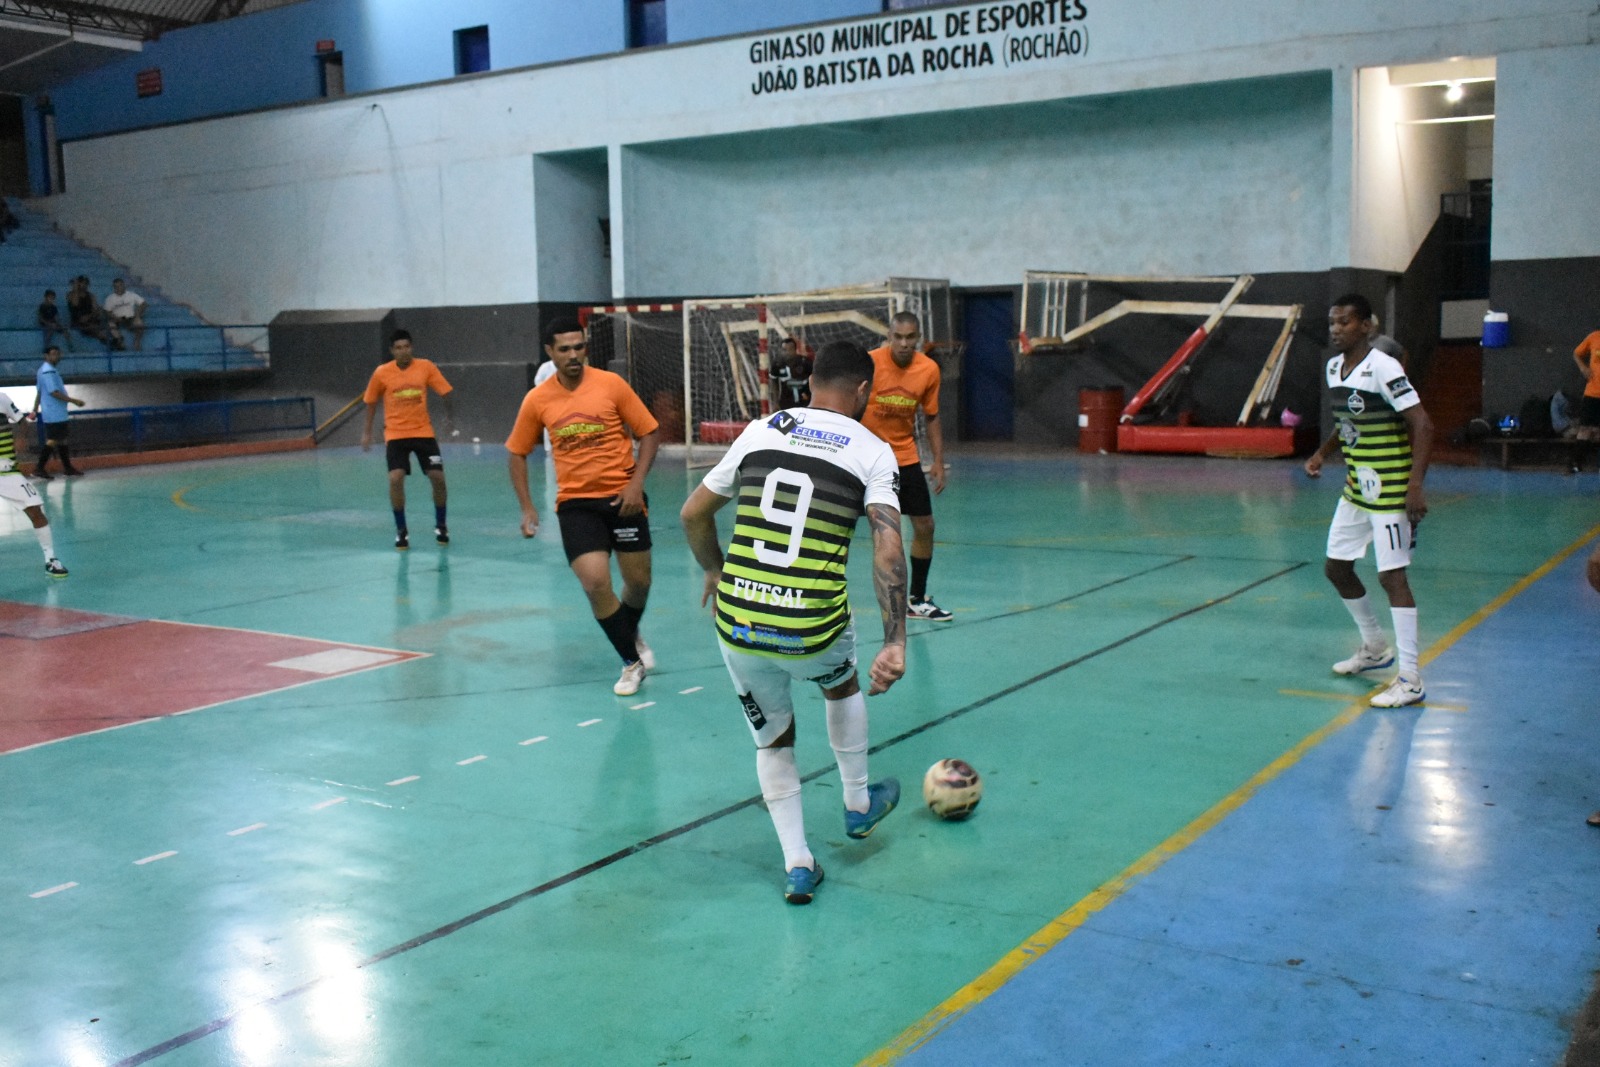 Barretos II e LT Sports disputam final do 26° Campeonato Municipal de Futsal nesta quinta-feira, dia 25